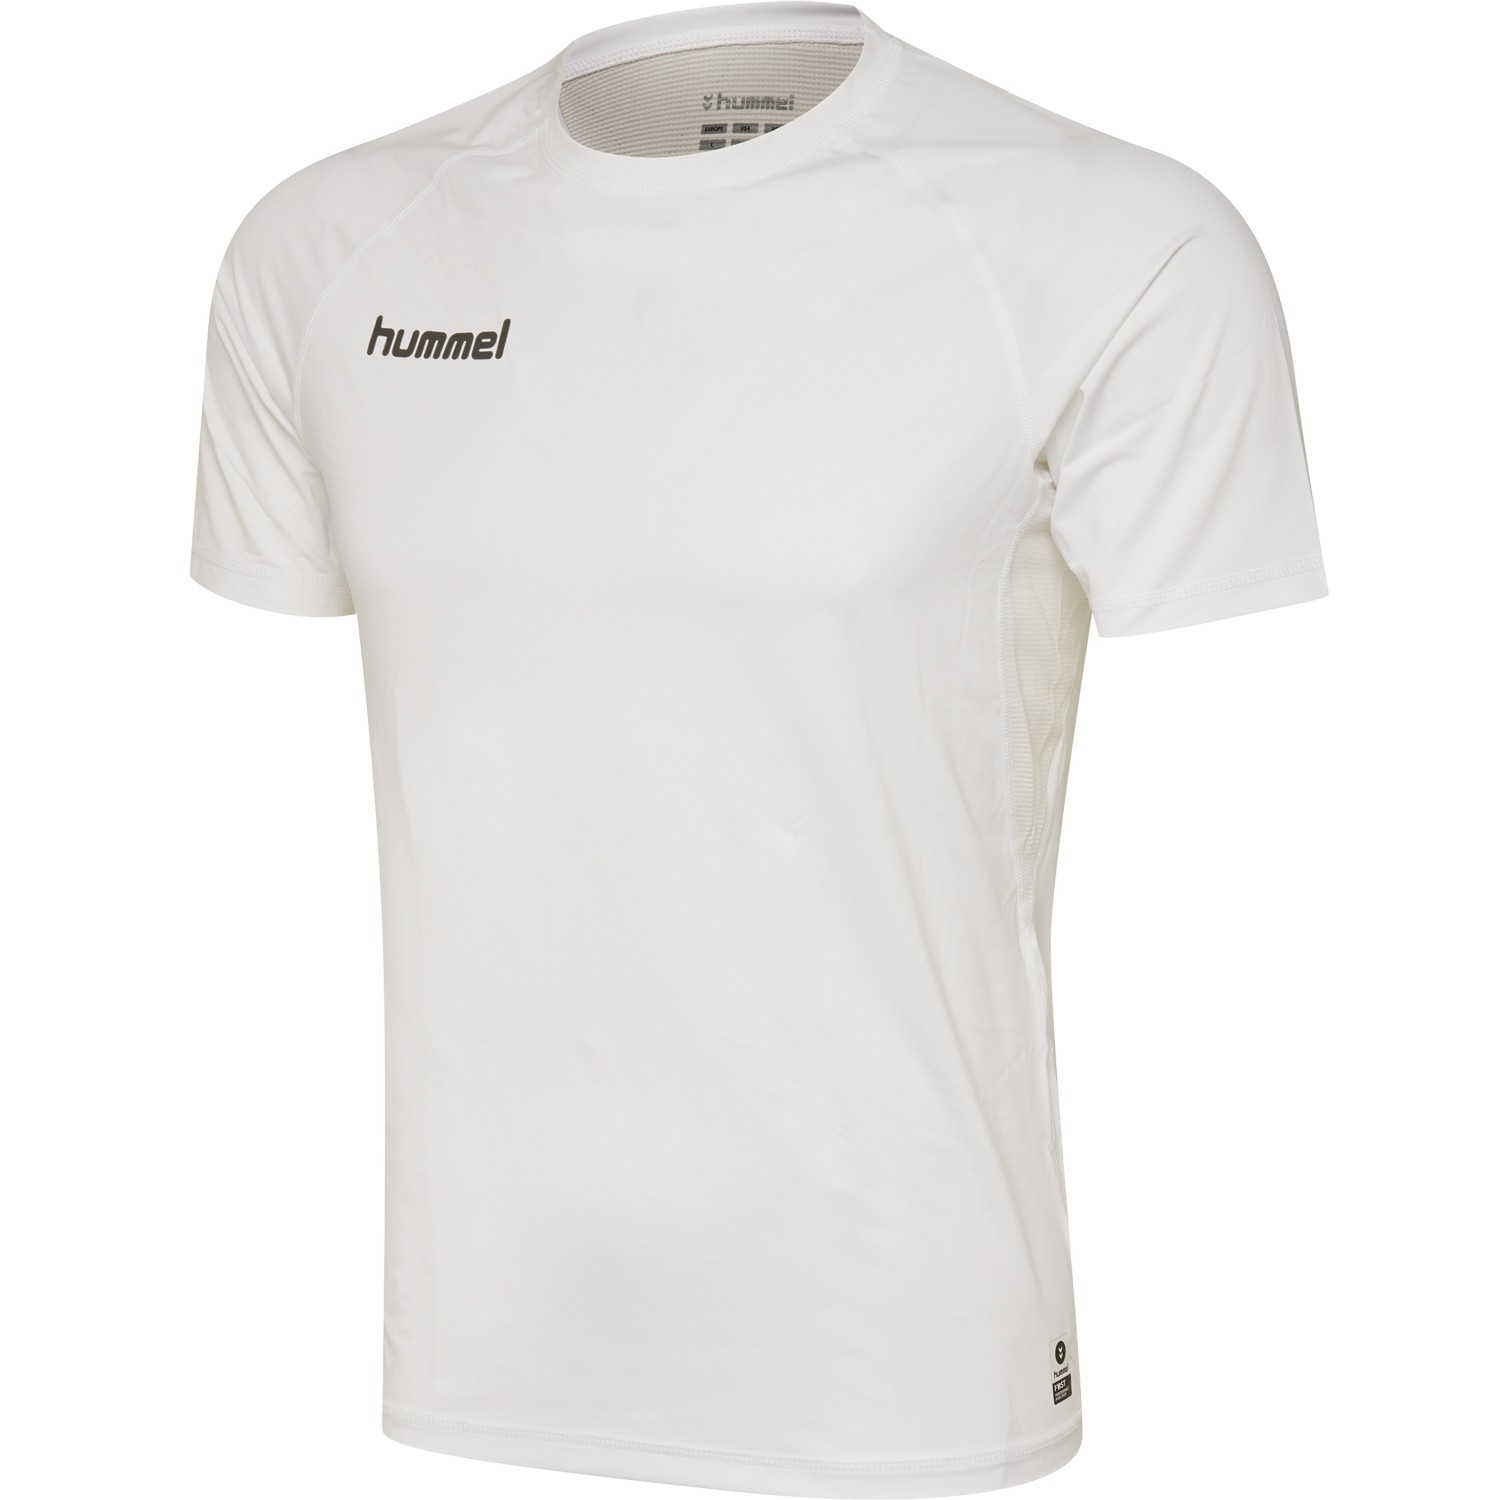 Hummel First Performance T-Shirt